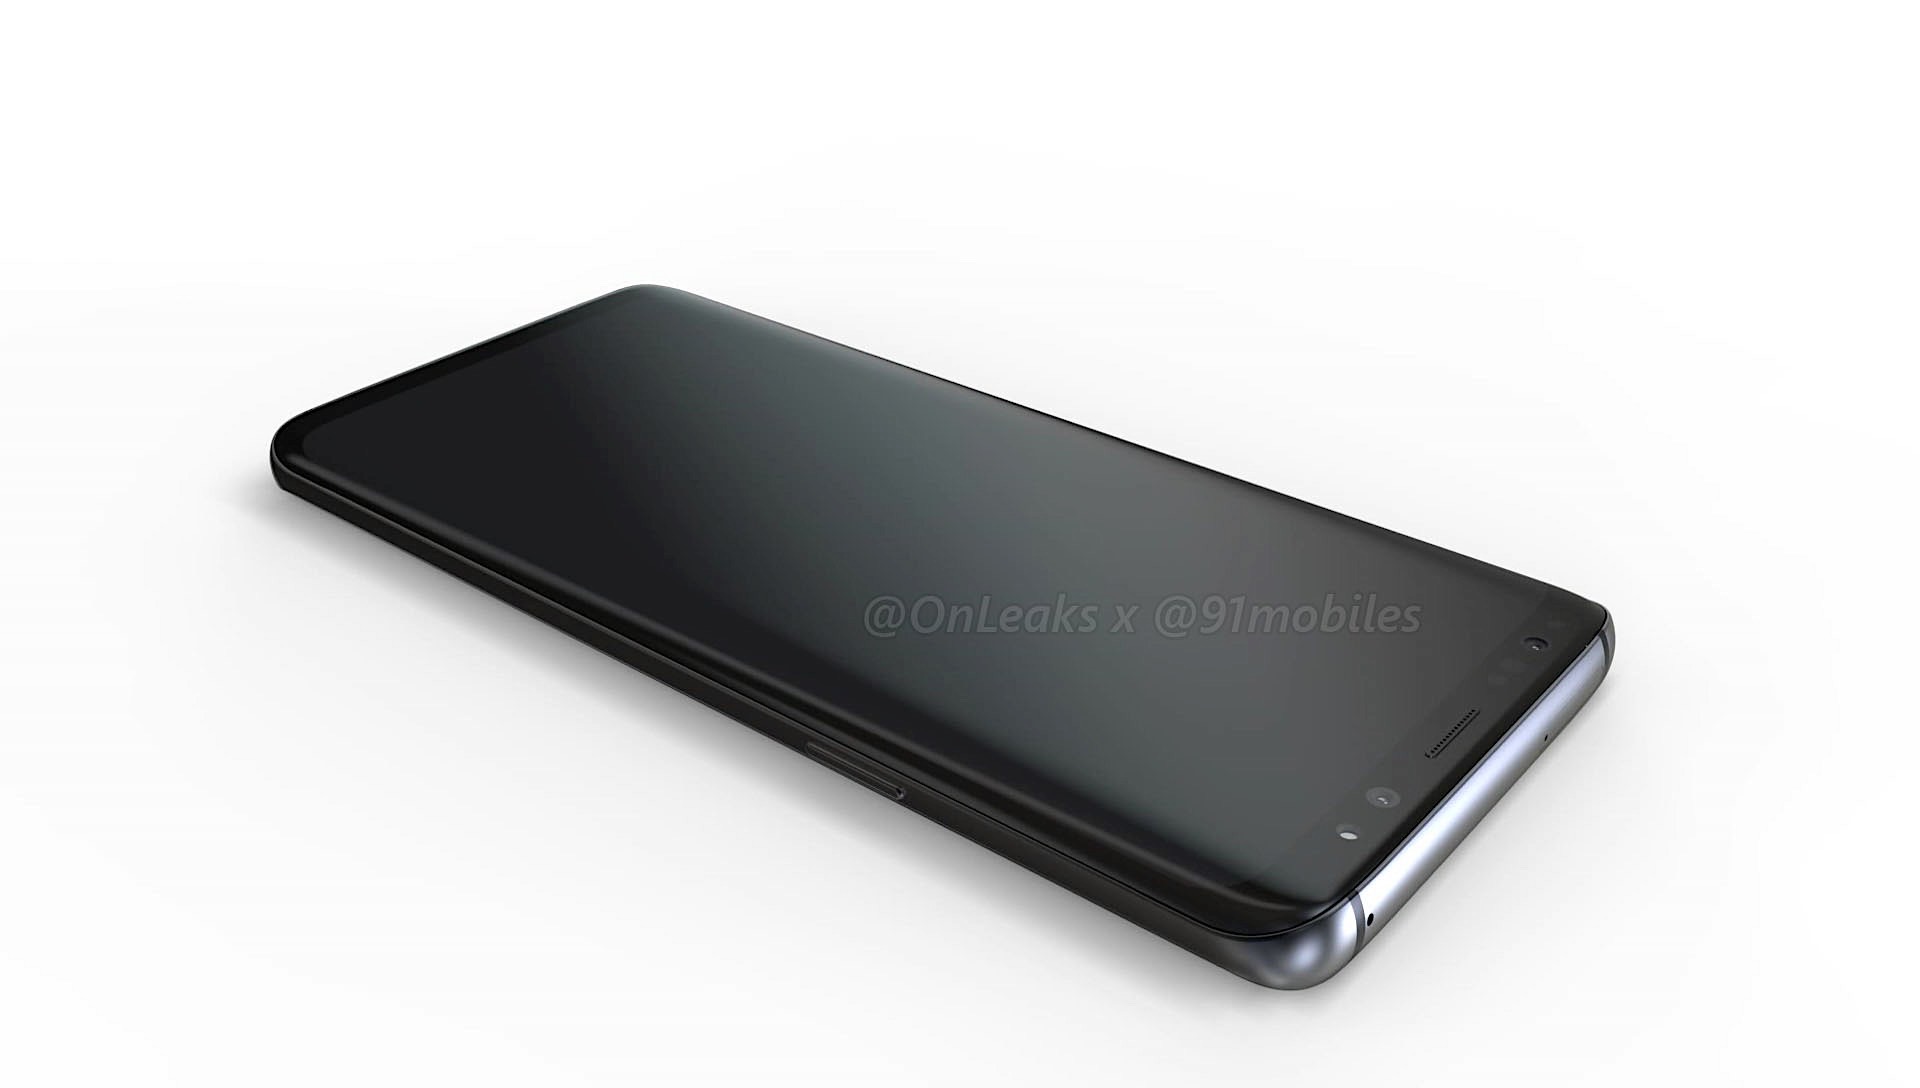 OnLeaks giới thiệu video
render Galaxy S9 và Galaxy S9+ cực kỳ sắc nét và rất chính
xác